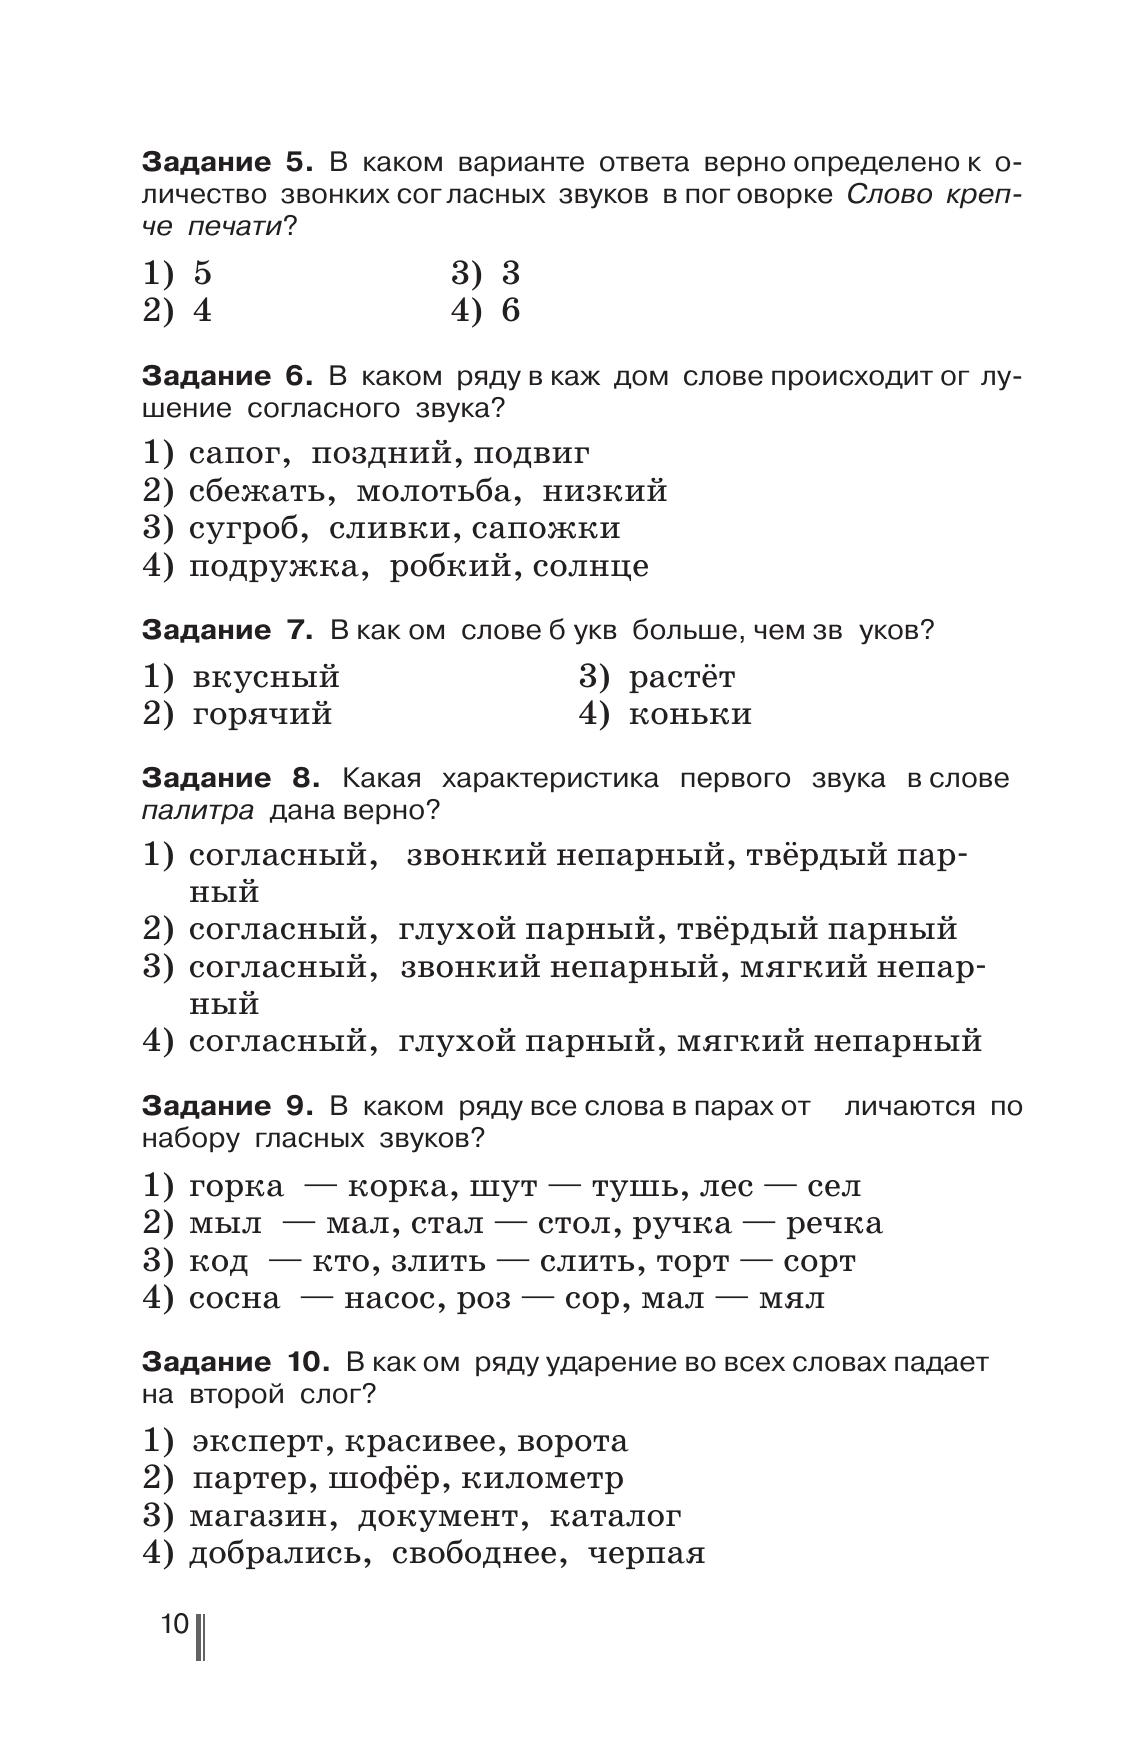 Русский язык. Готовимся к ГИА. Тесты, творческие работы, проекты. 5 класс 10